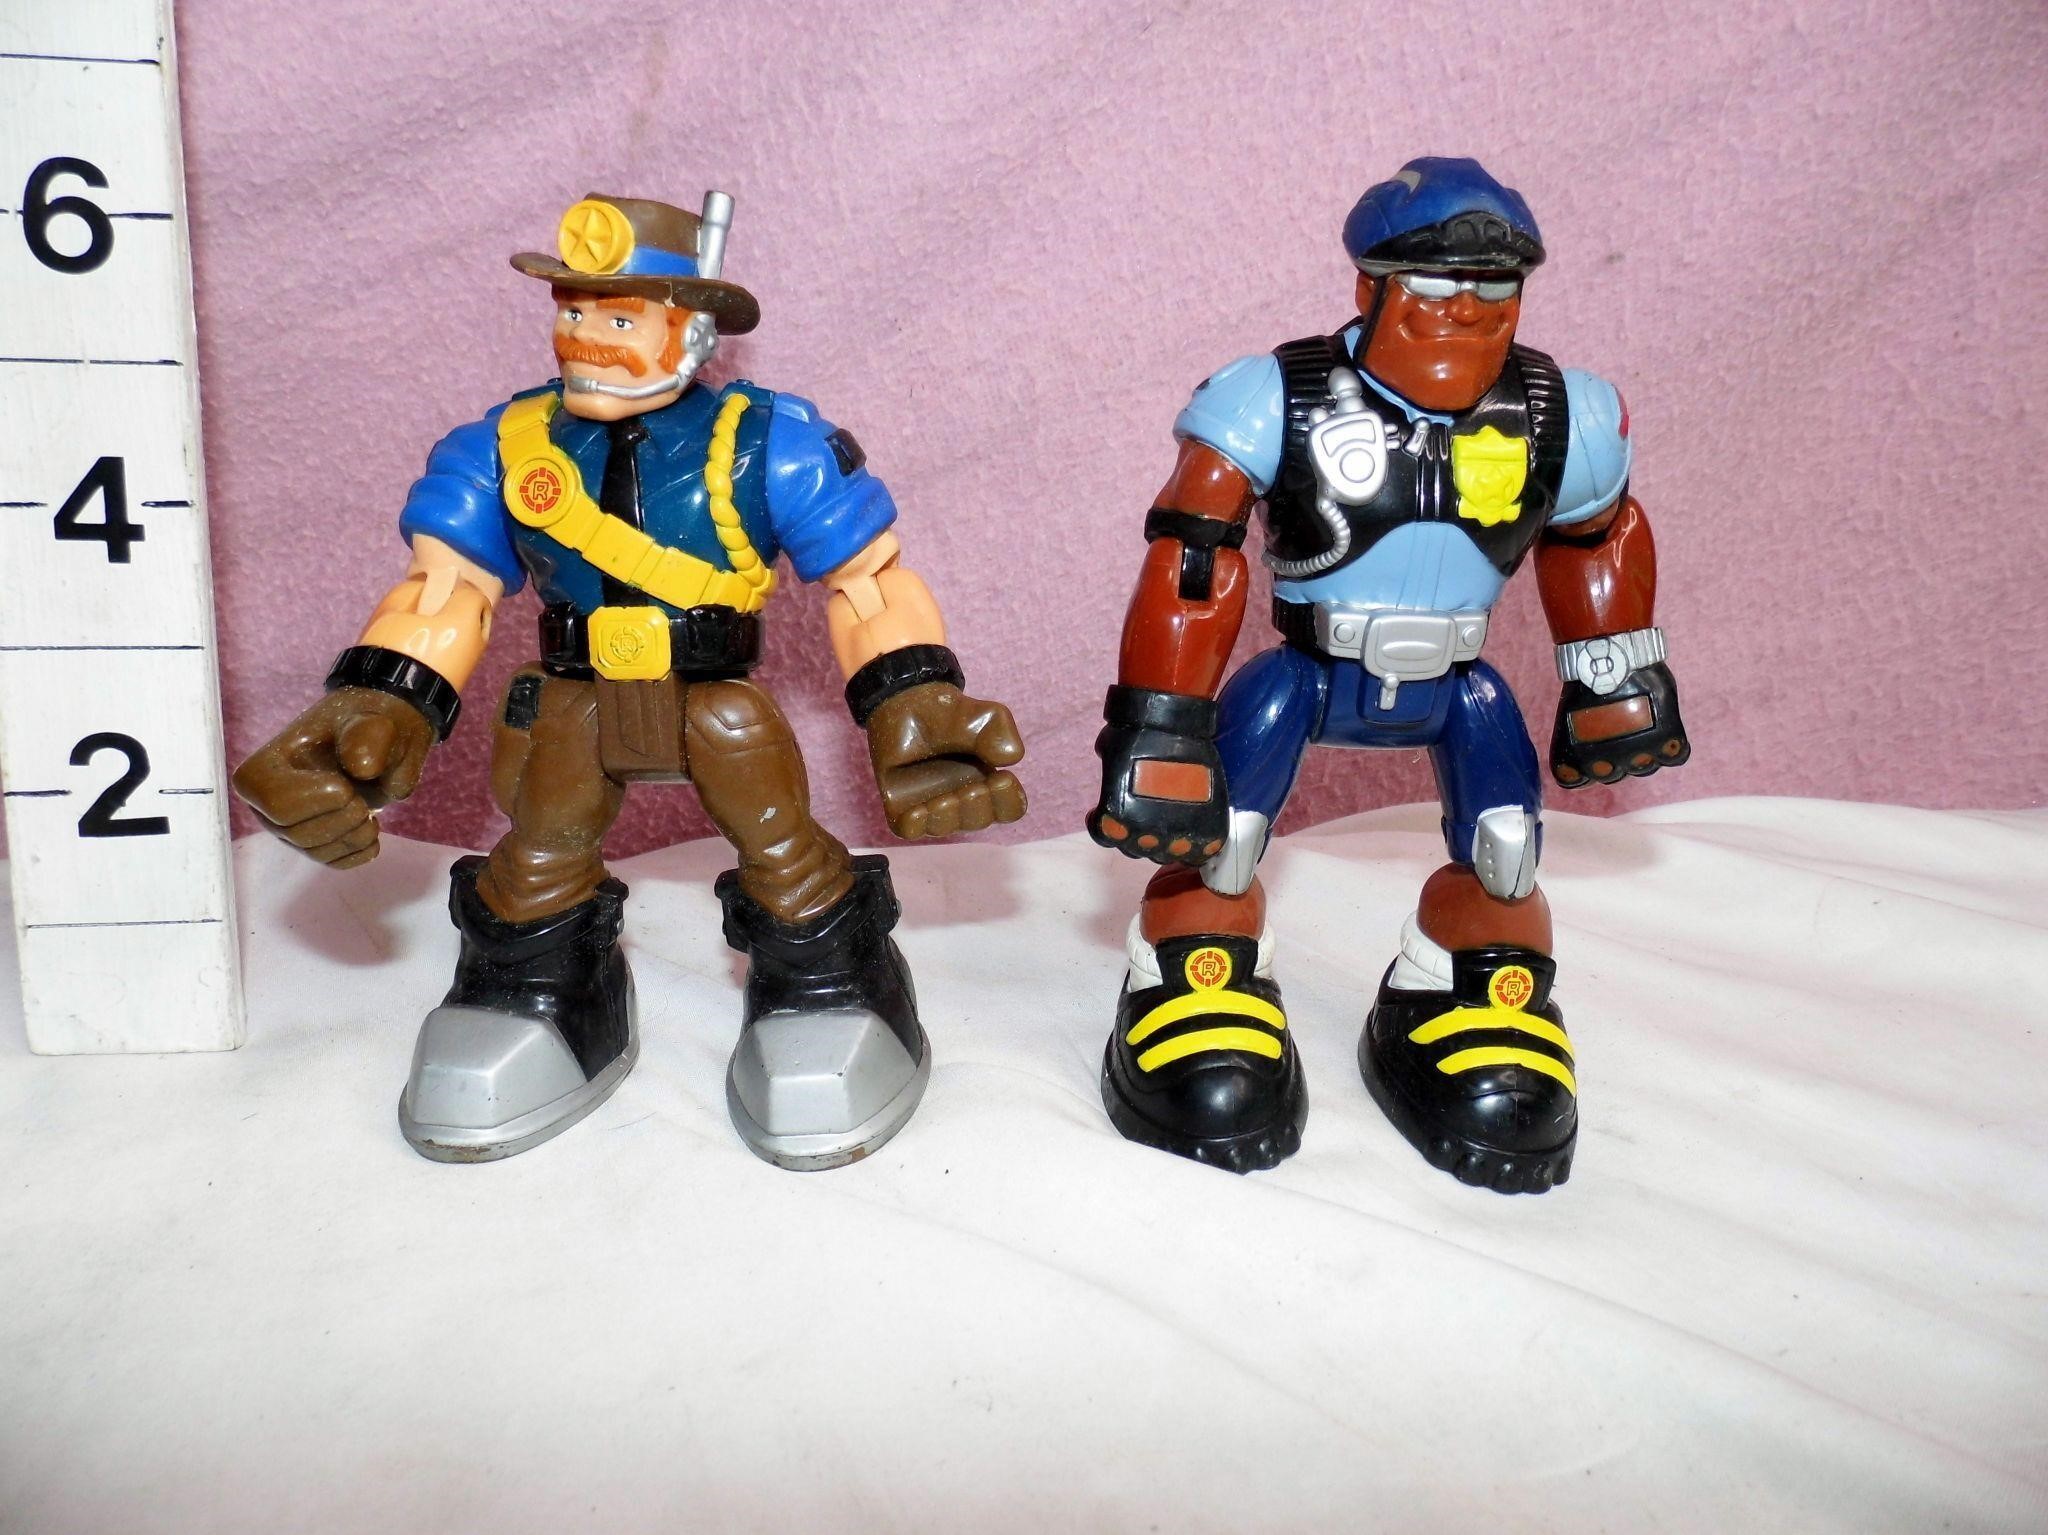 2 Mattel Rescue Heroes Figures